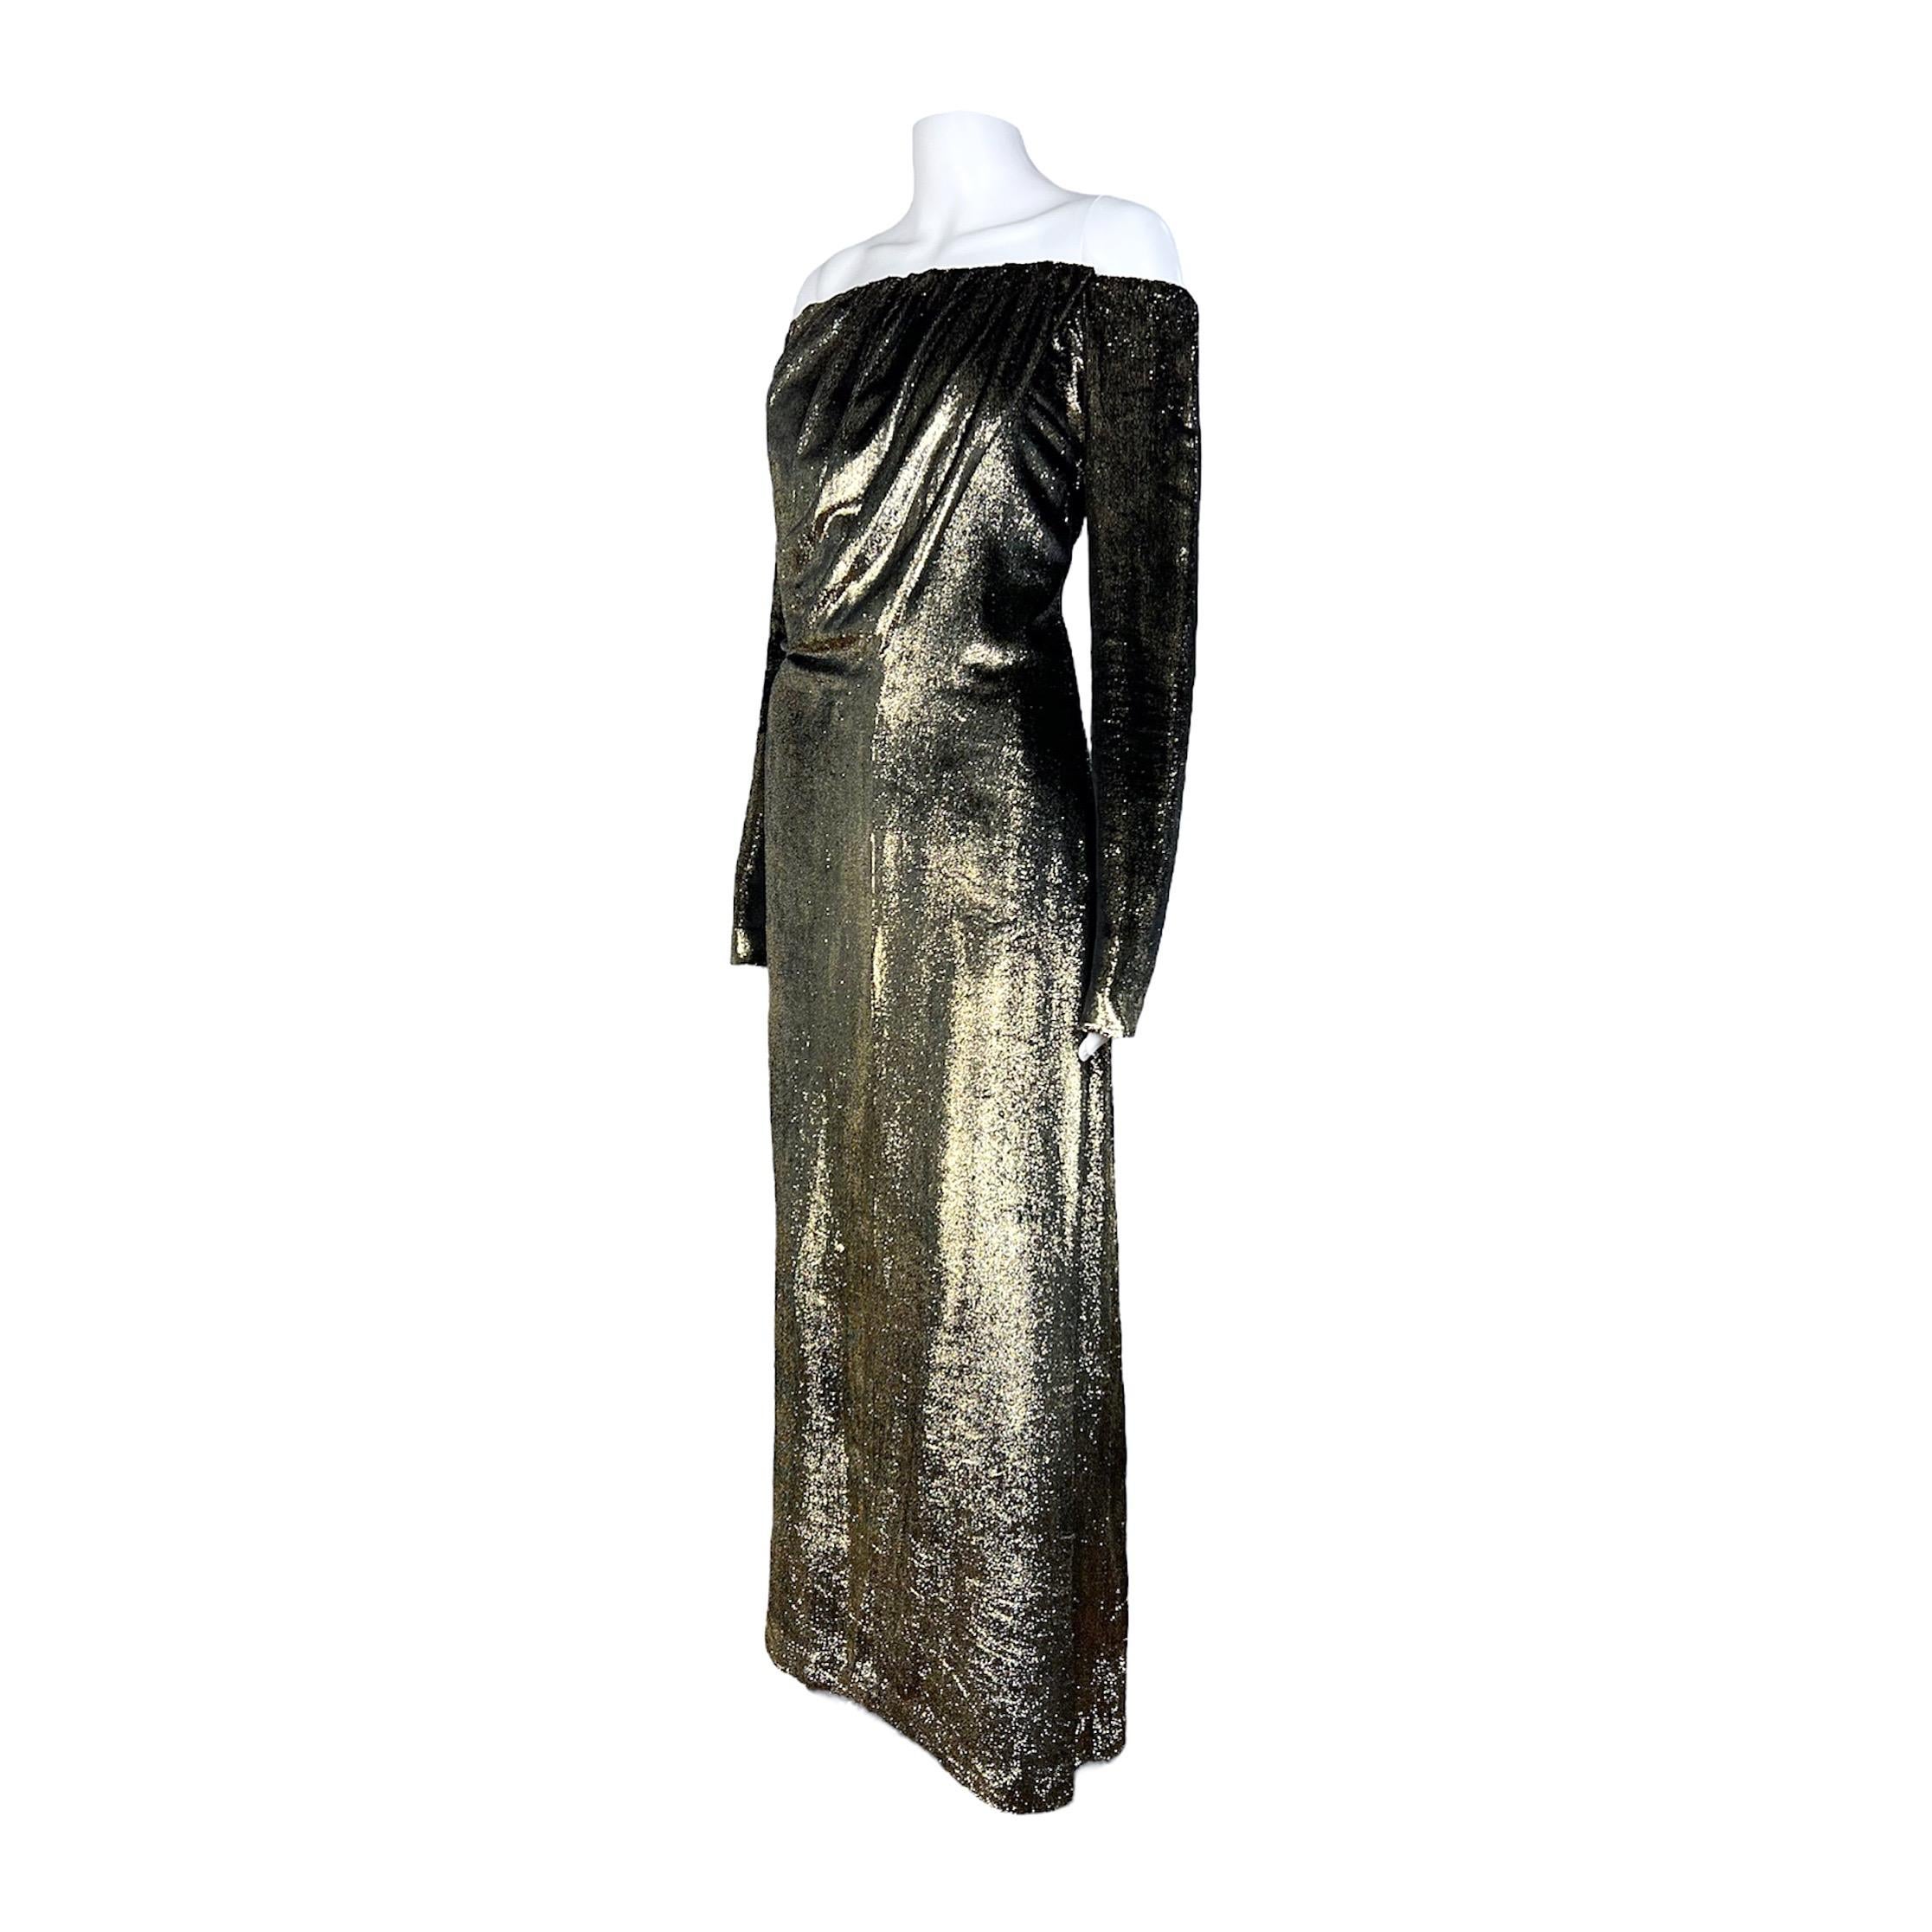 Exquisit und unvergleichlich ist dieses faszinierende Goldlamé-Kleid von Yves Saint Laurent aus der geschätzten Frühjahr-Sommer-Kollektion 1989. Es liegt zart über der Schulter, fällt anmutig herab und schmückt die Büste mit meisterhaften